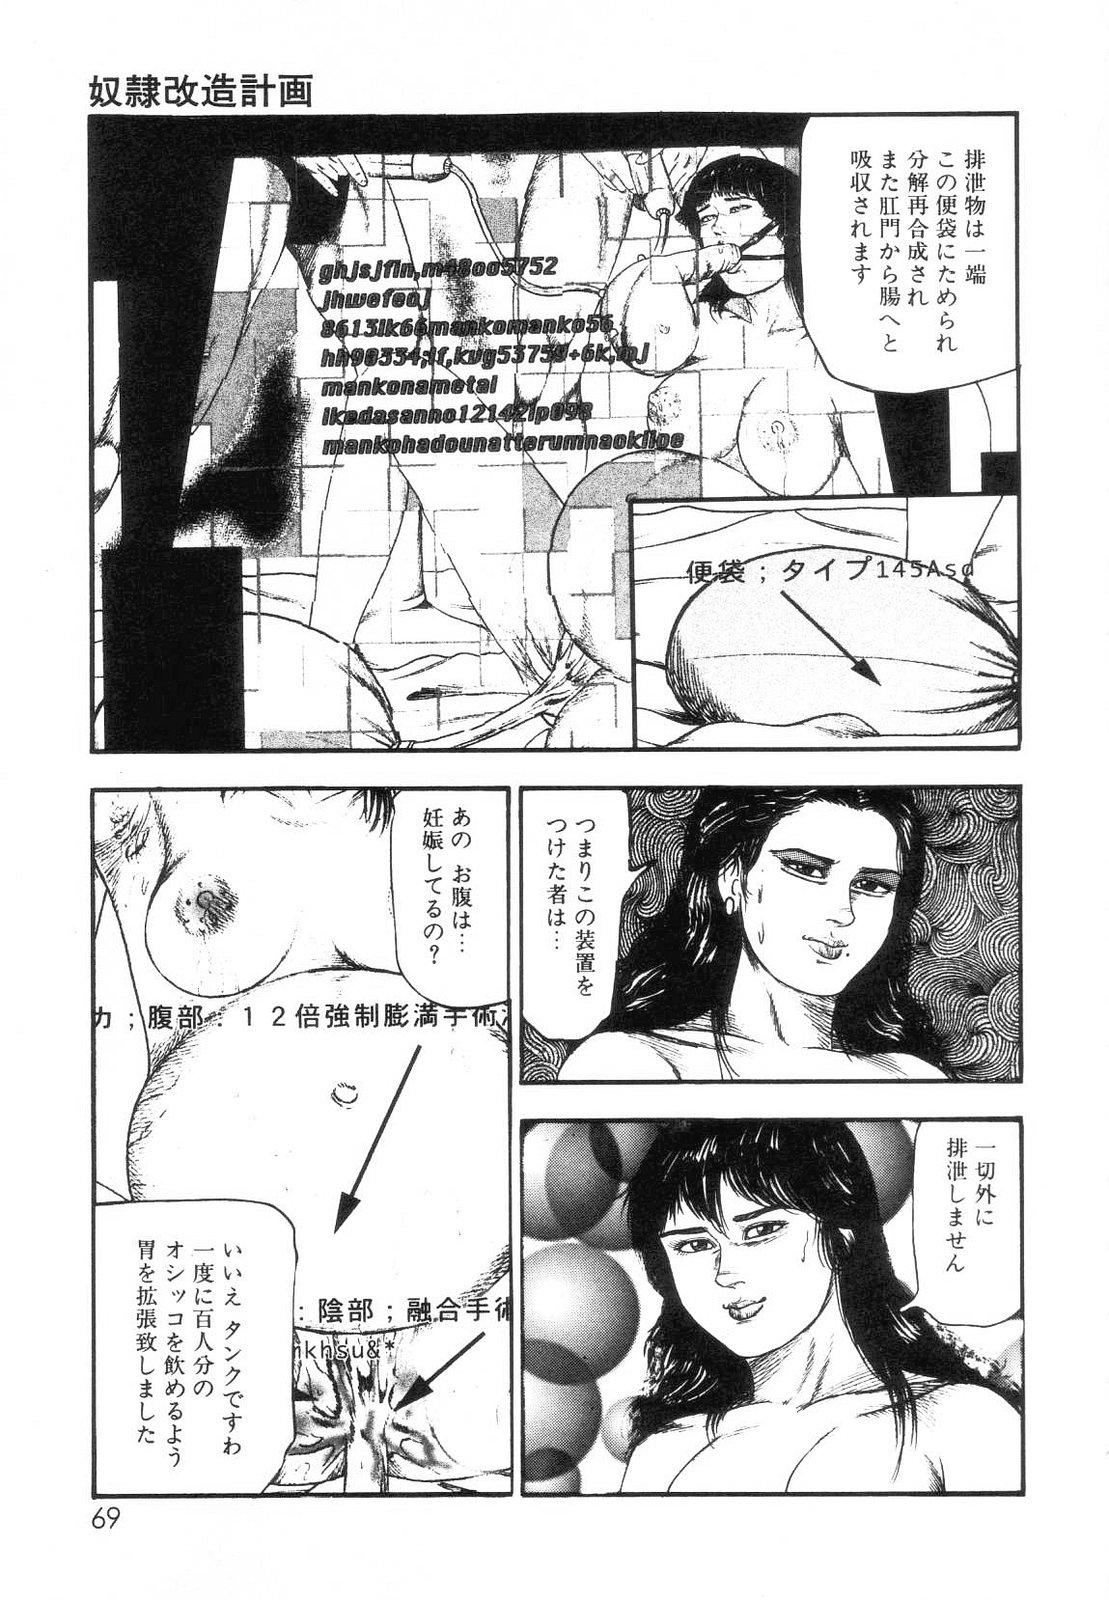 Shiro no Mokushiroku Vol. 7 - Shiiku Ningyou Erika no Shou 70